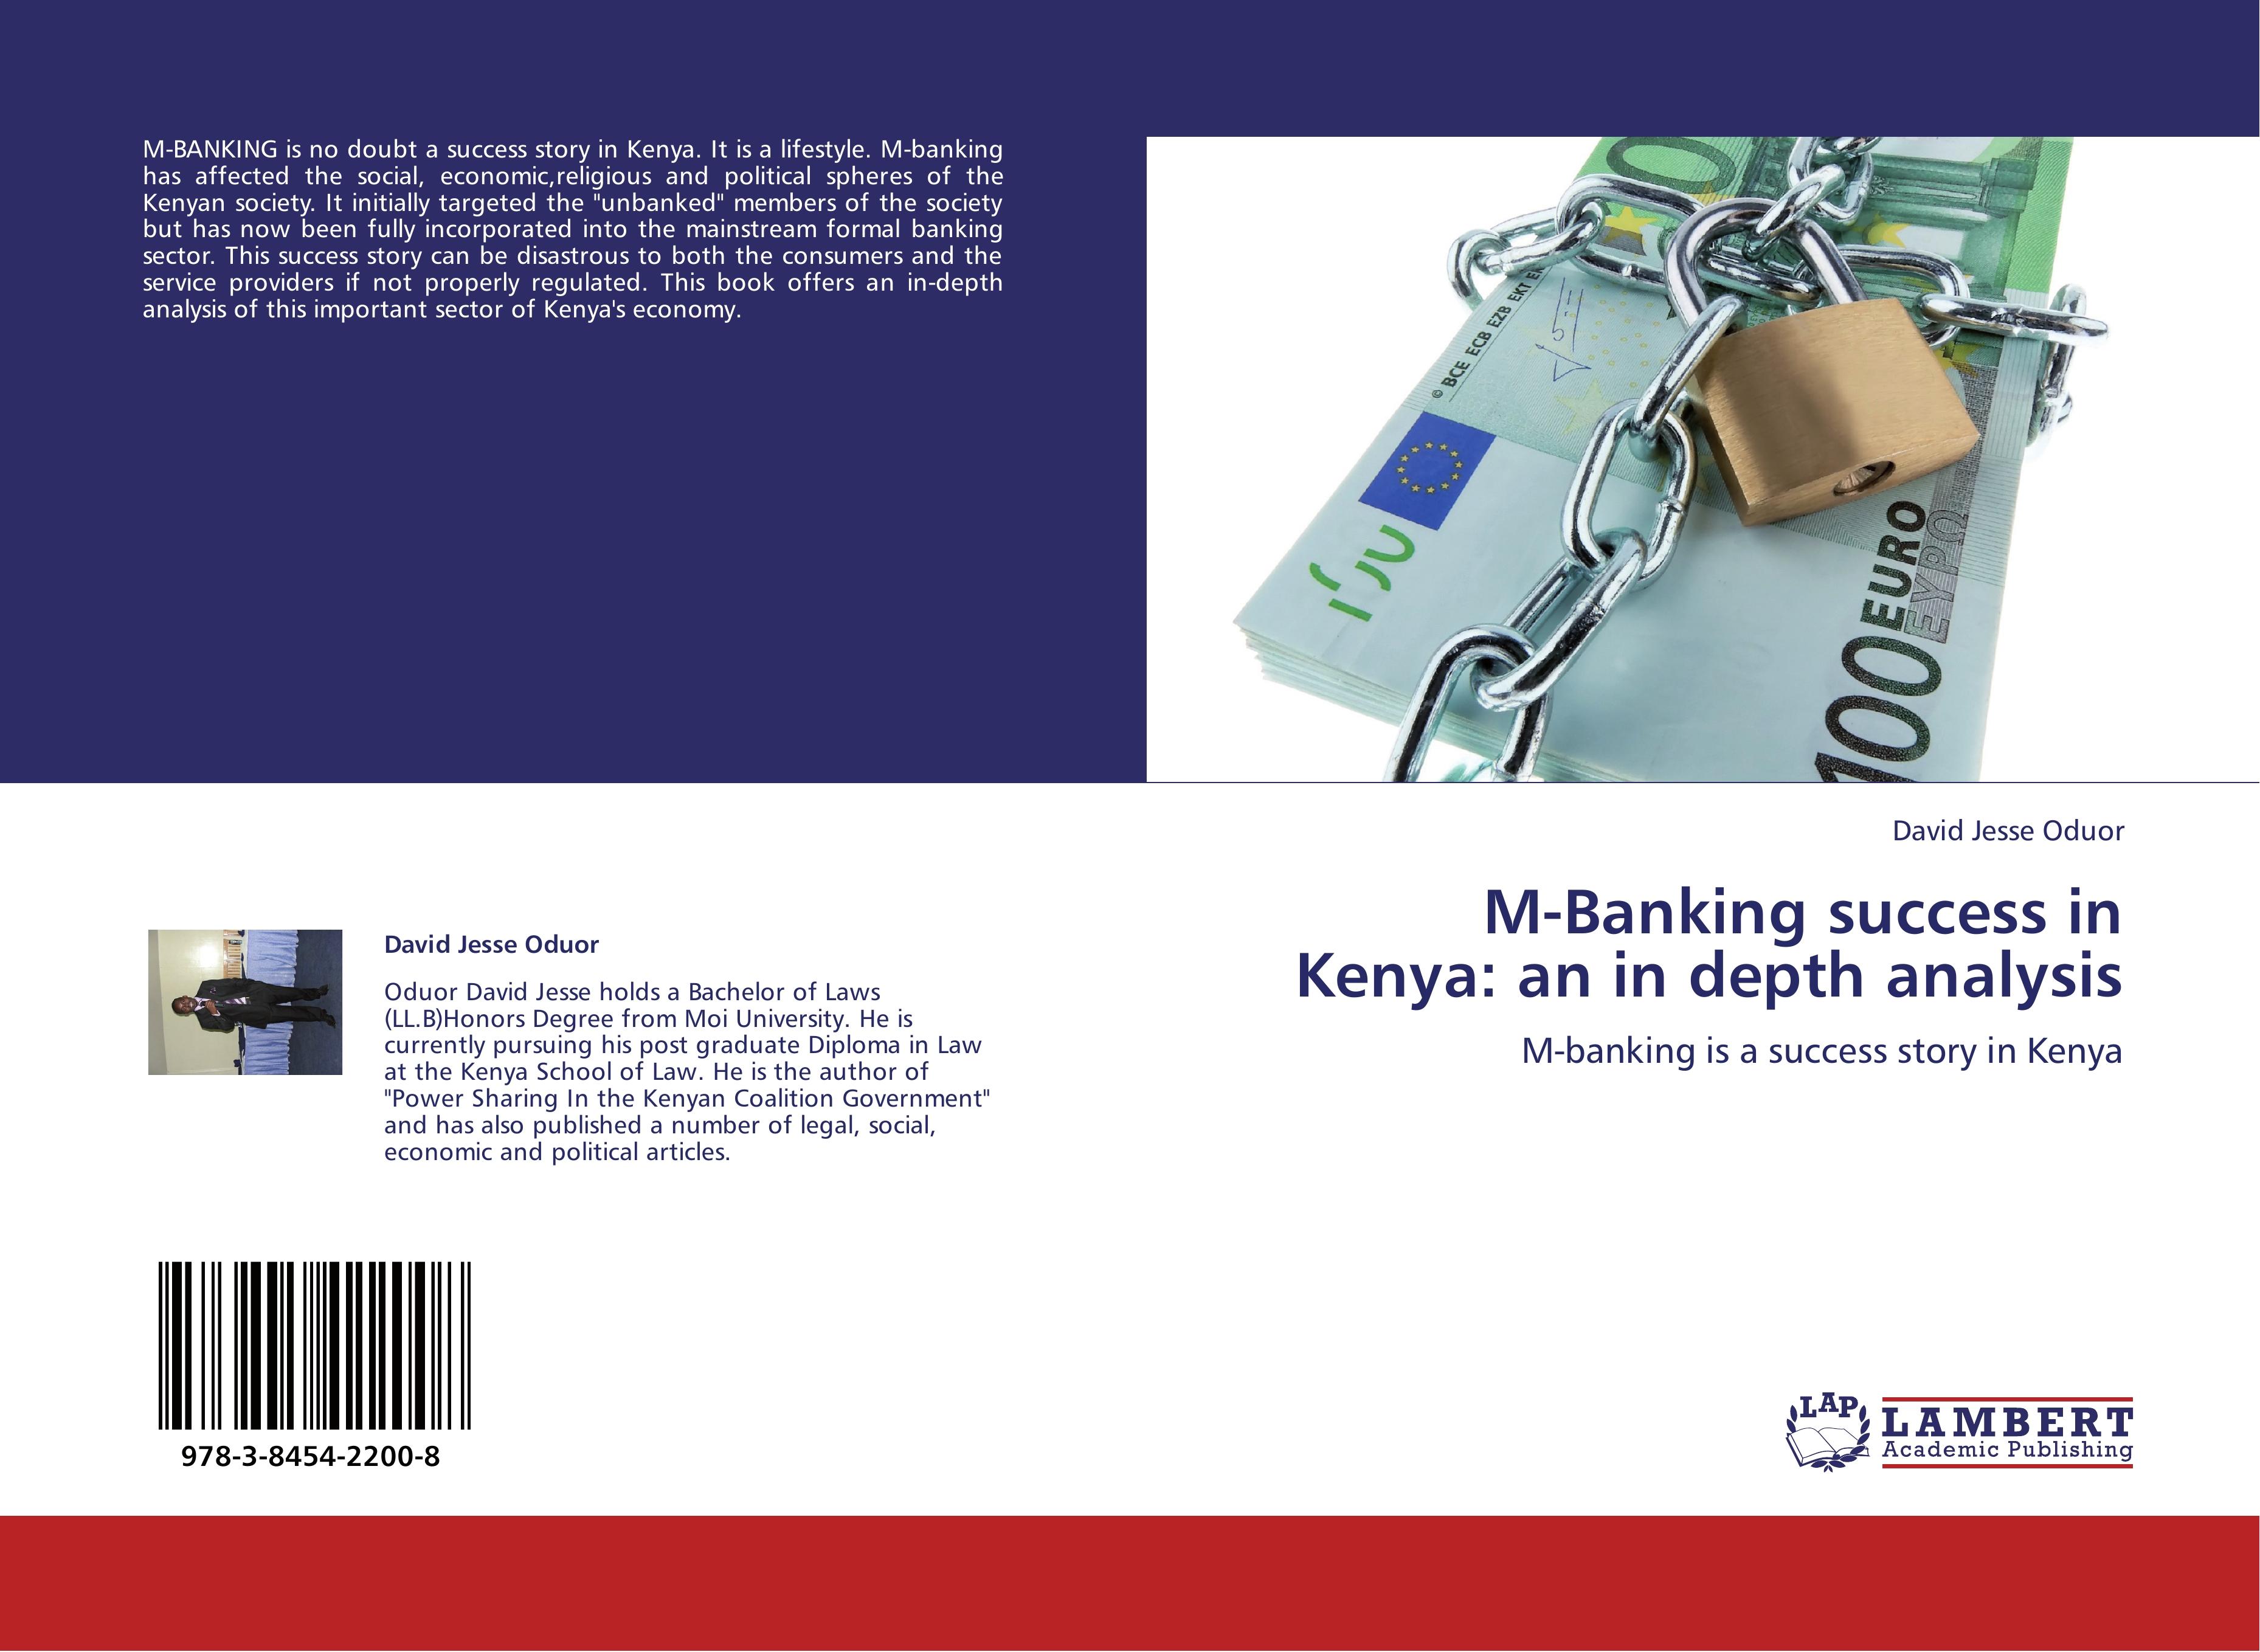 M-Banking success in Kenya: an in depth analysis - DAVID JESSE ODUOR